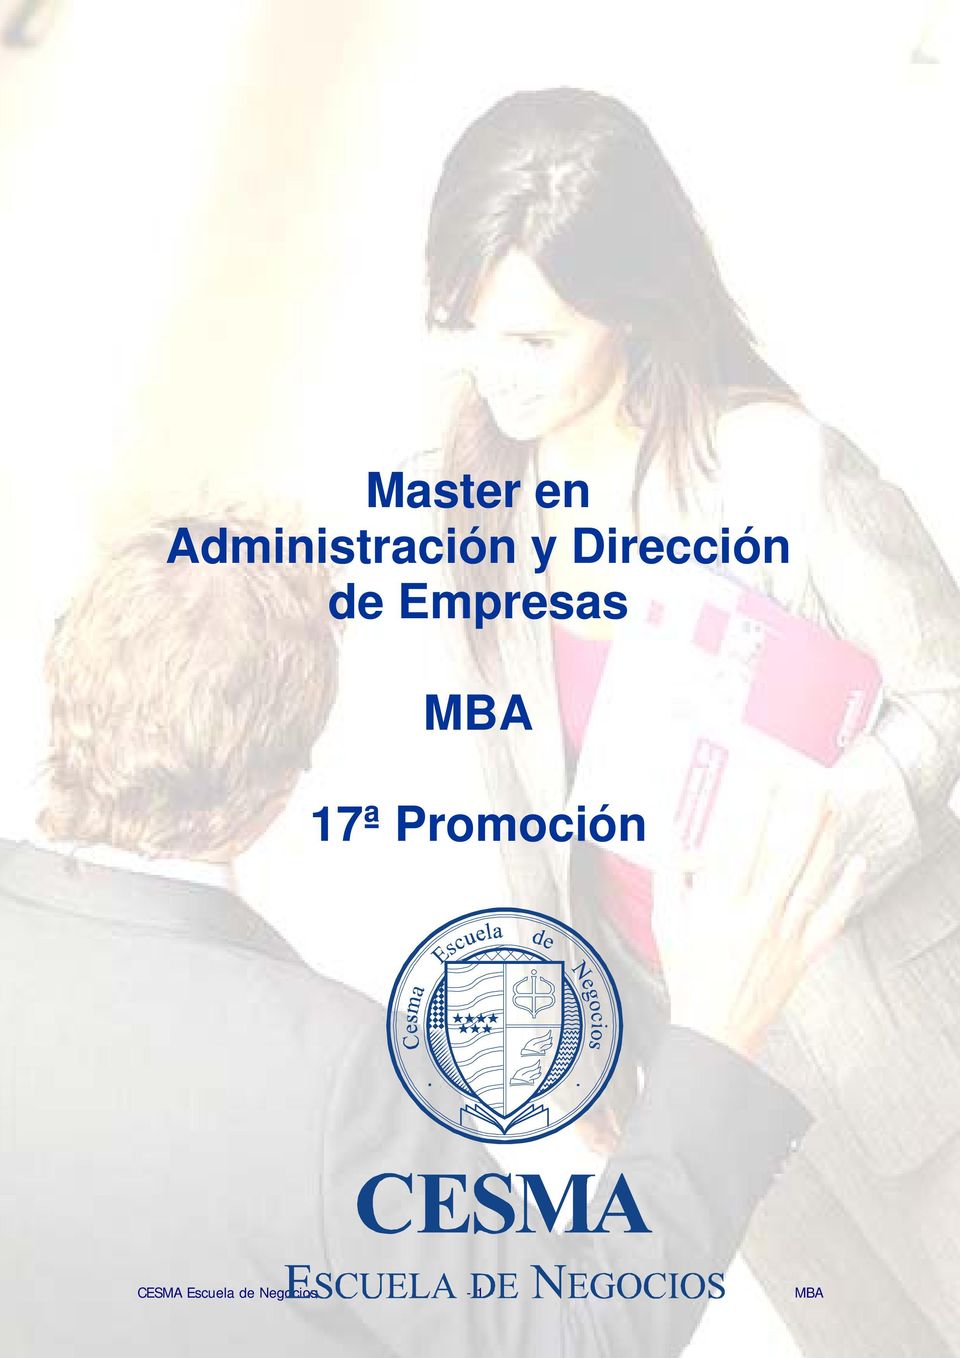 MBA 17ª Promoción CESMA